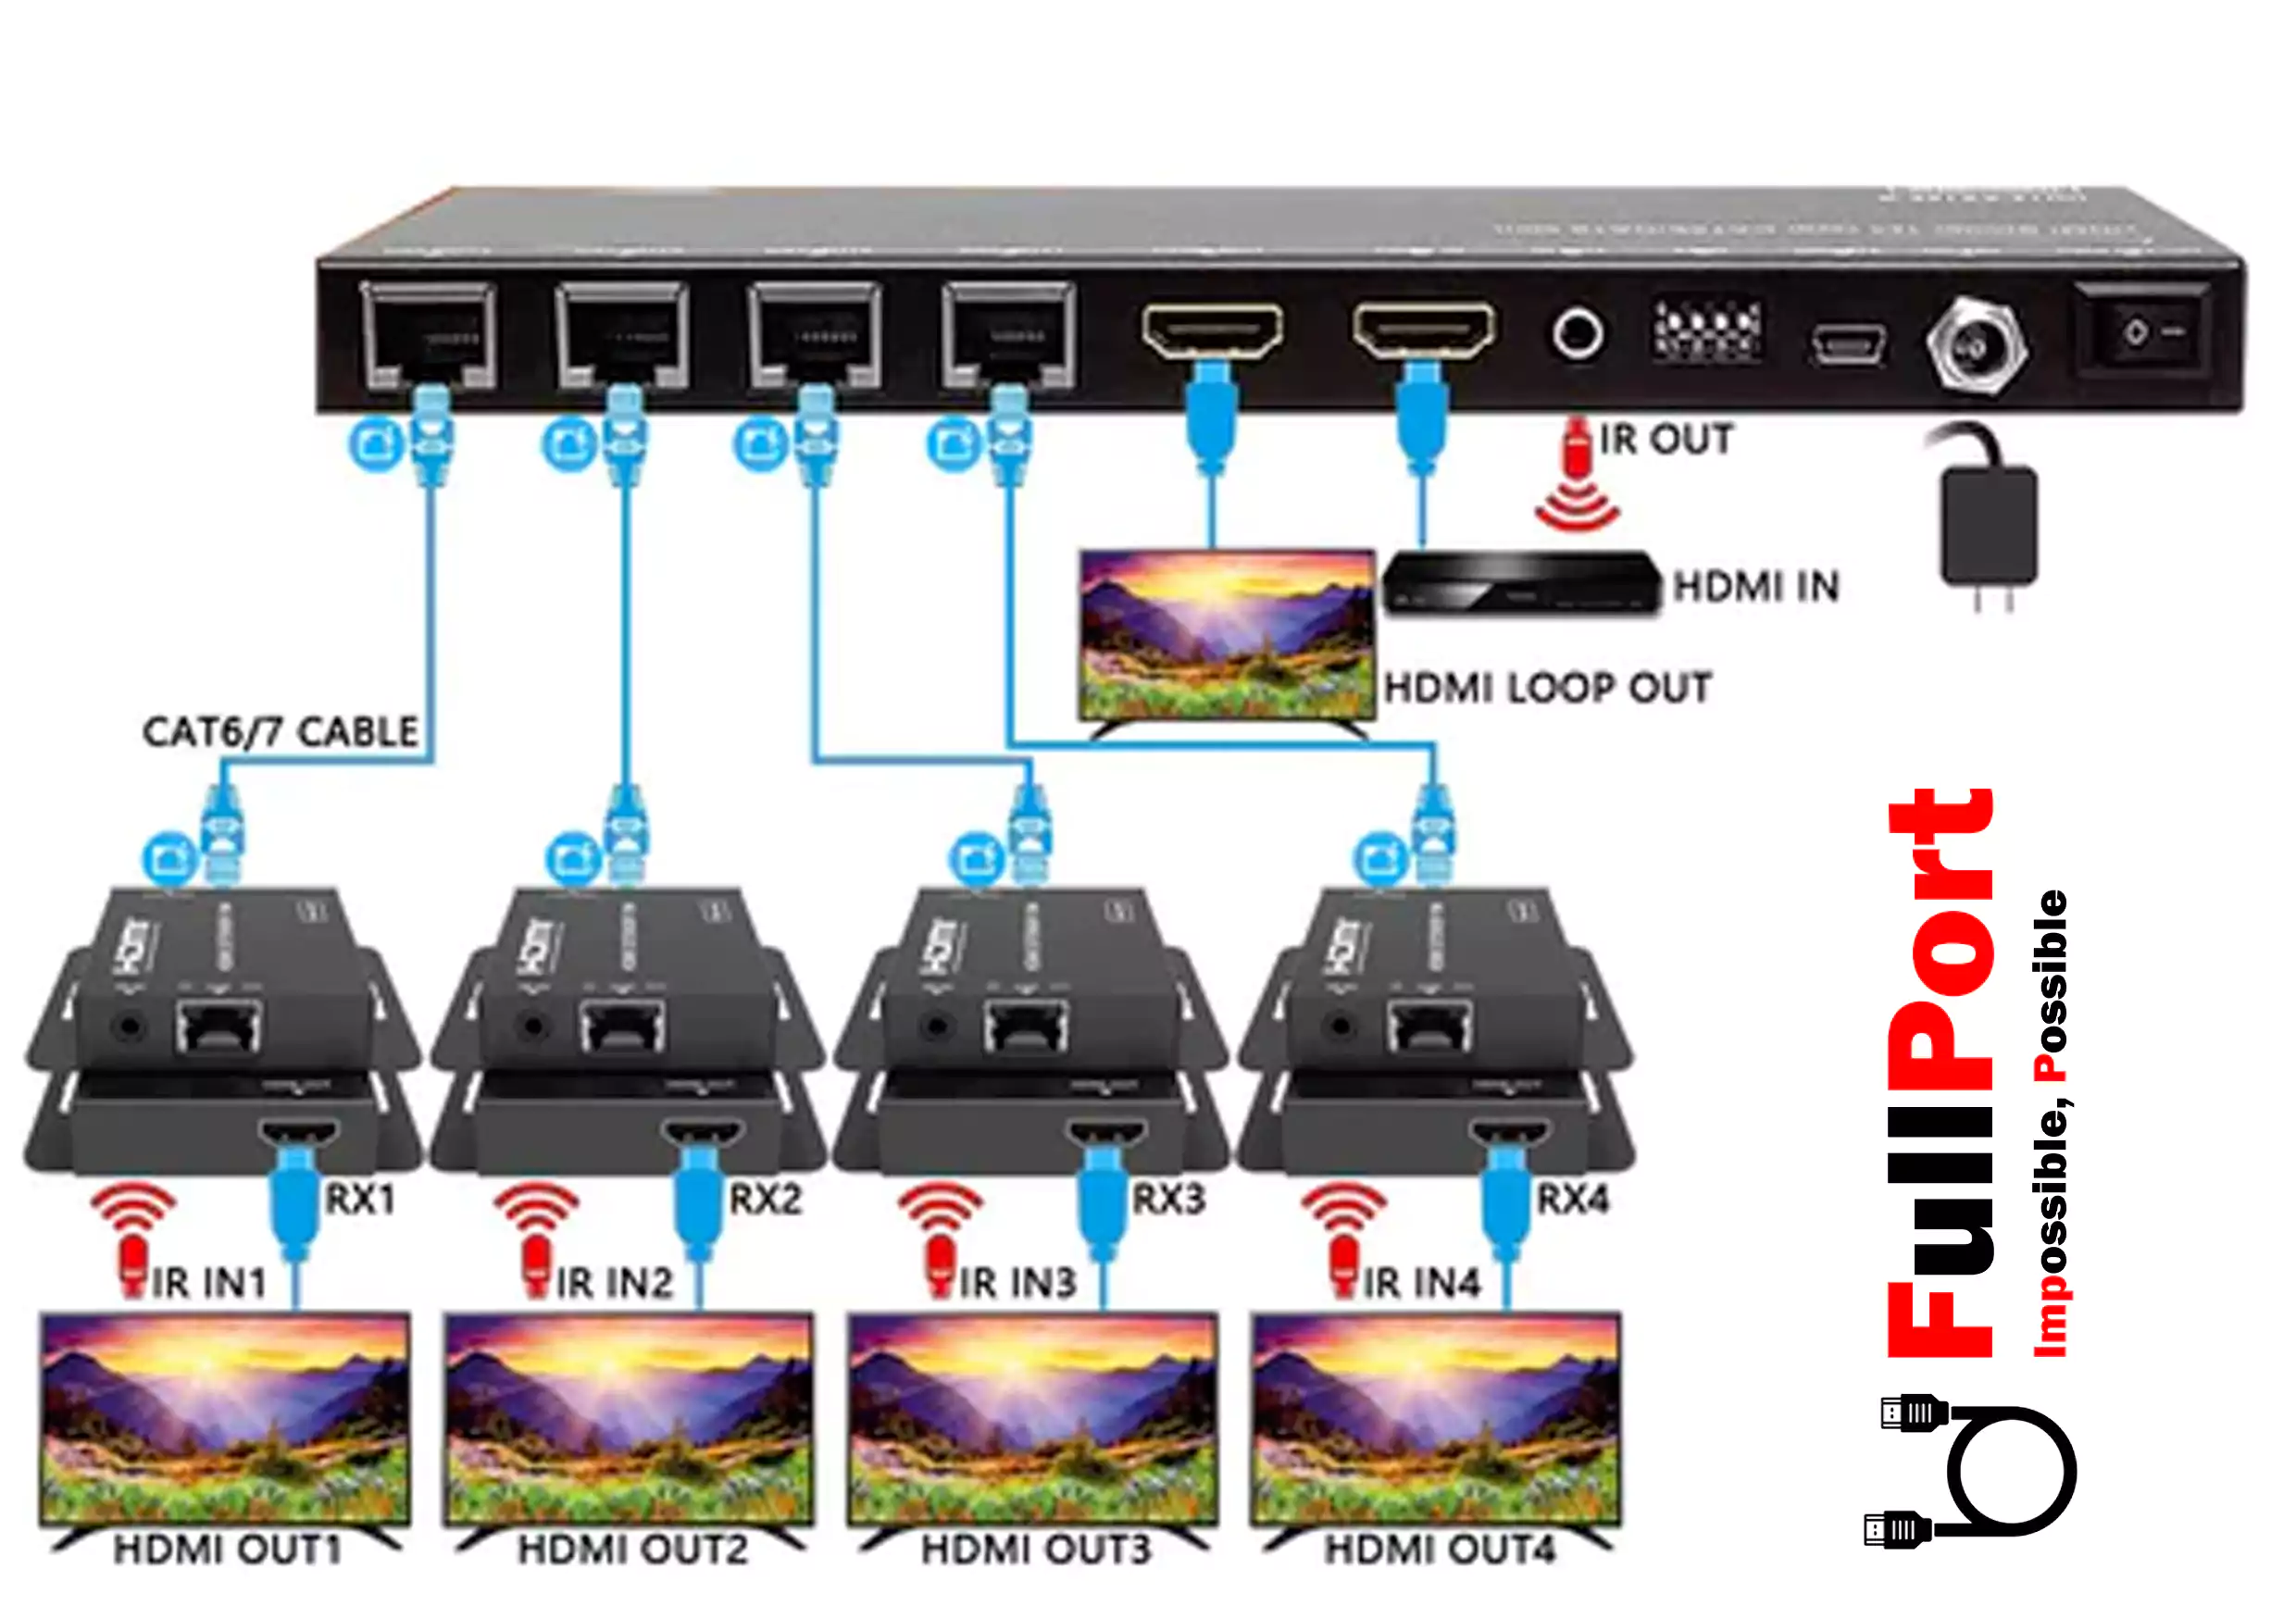 خرید اسپلیتر+توسعه دهنده HDMI روی کابل شبکه 50 متر با 4 عدد گیرنده فرانت | FARANET مدل FN-V149 از فروشگاه اینترنتی فول پورت